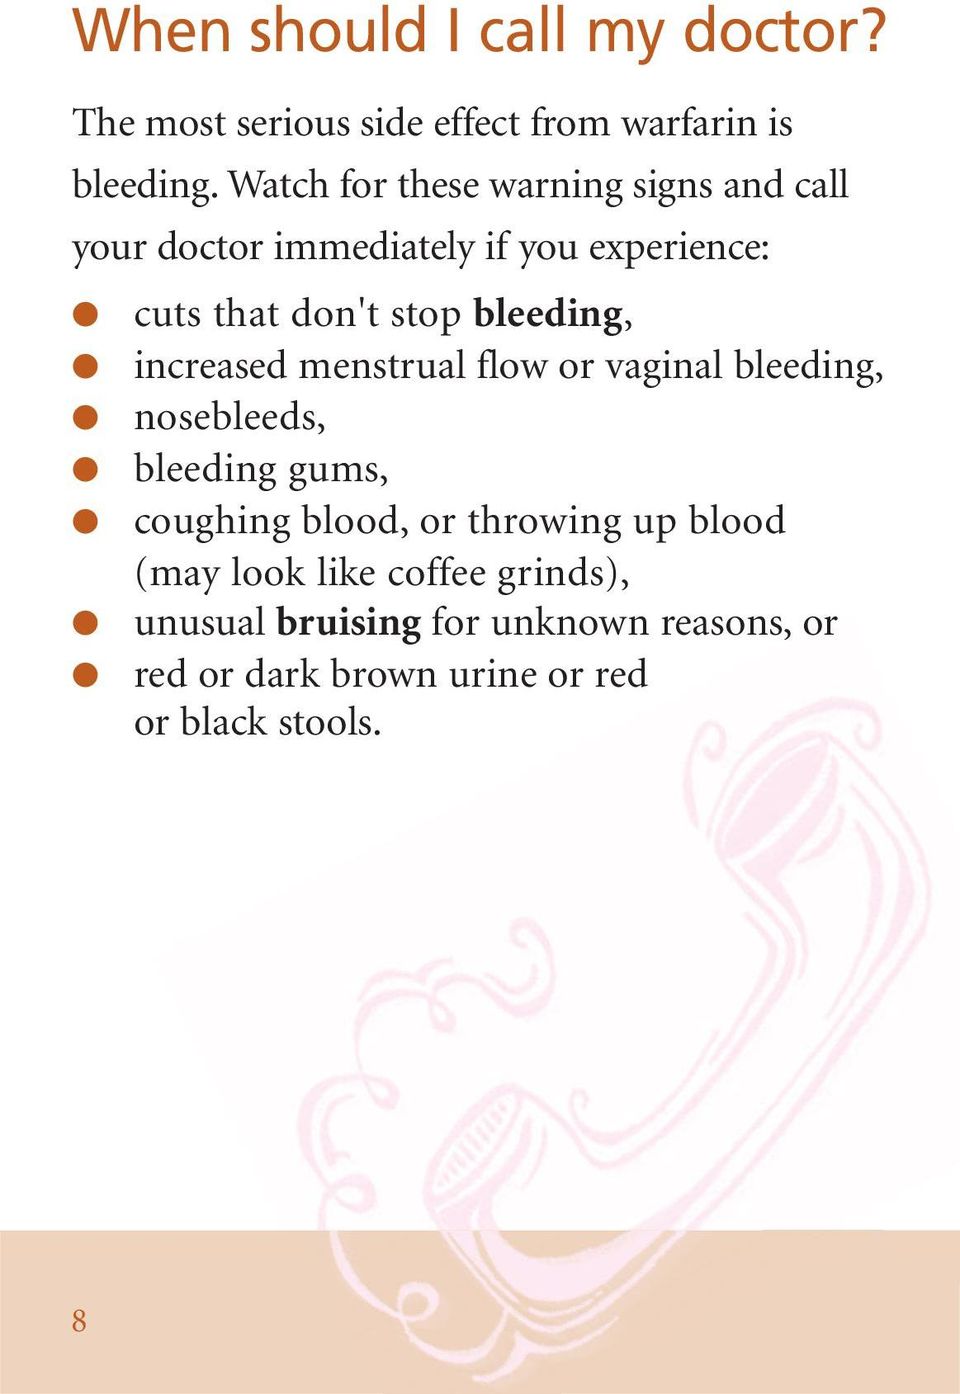 bleeding, increased menstrual flow or vaginal bleeding, nosebleeds, bleeding gums, coughing blood, or